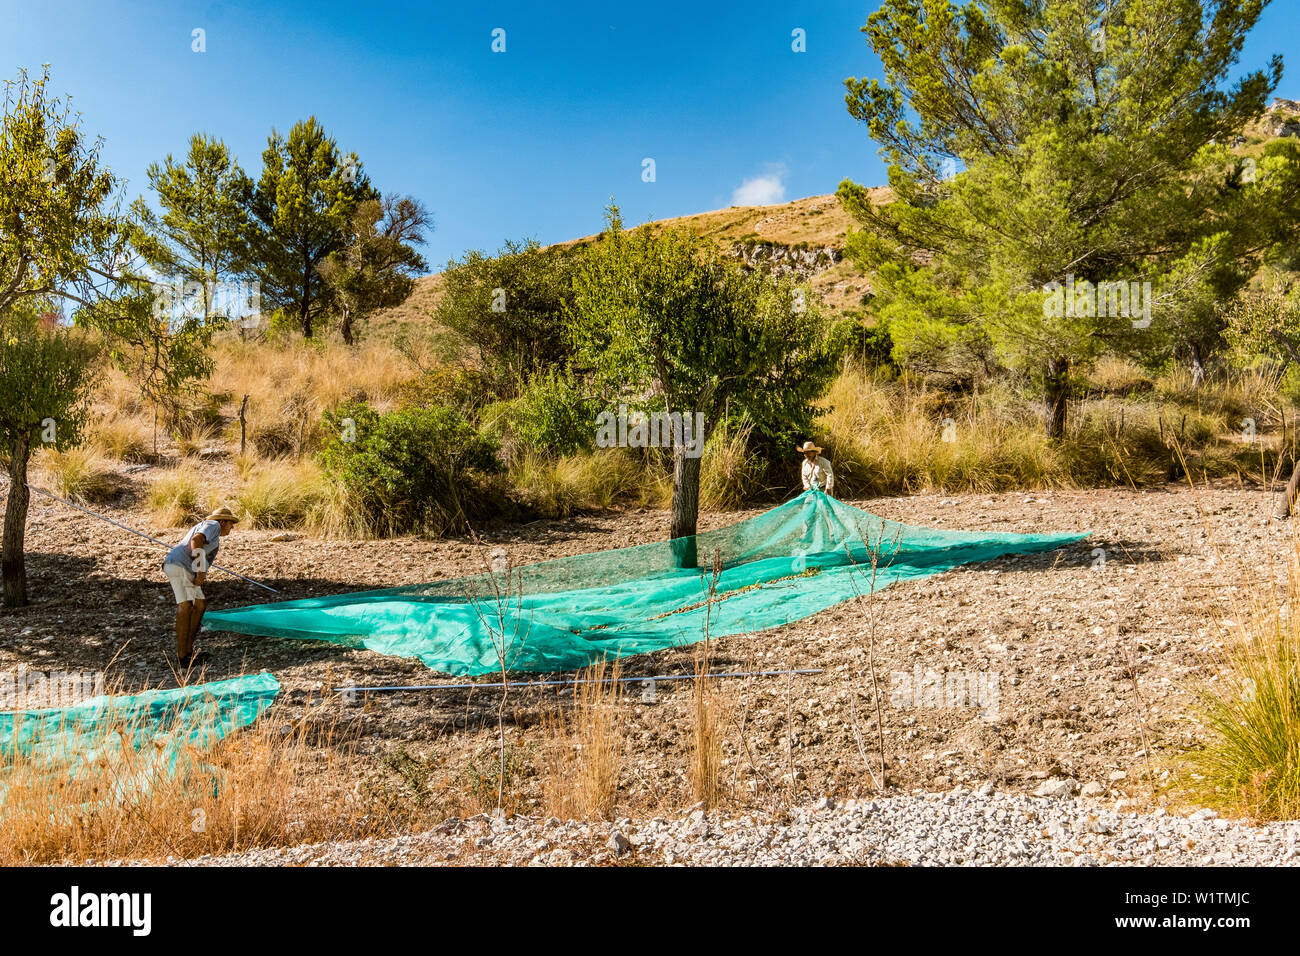 La récolte des olives dans les montagnes entre Betlem et Arta, Majorque, Îles Baléares, Espagne Banque D'Images